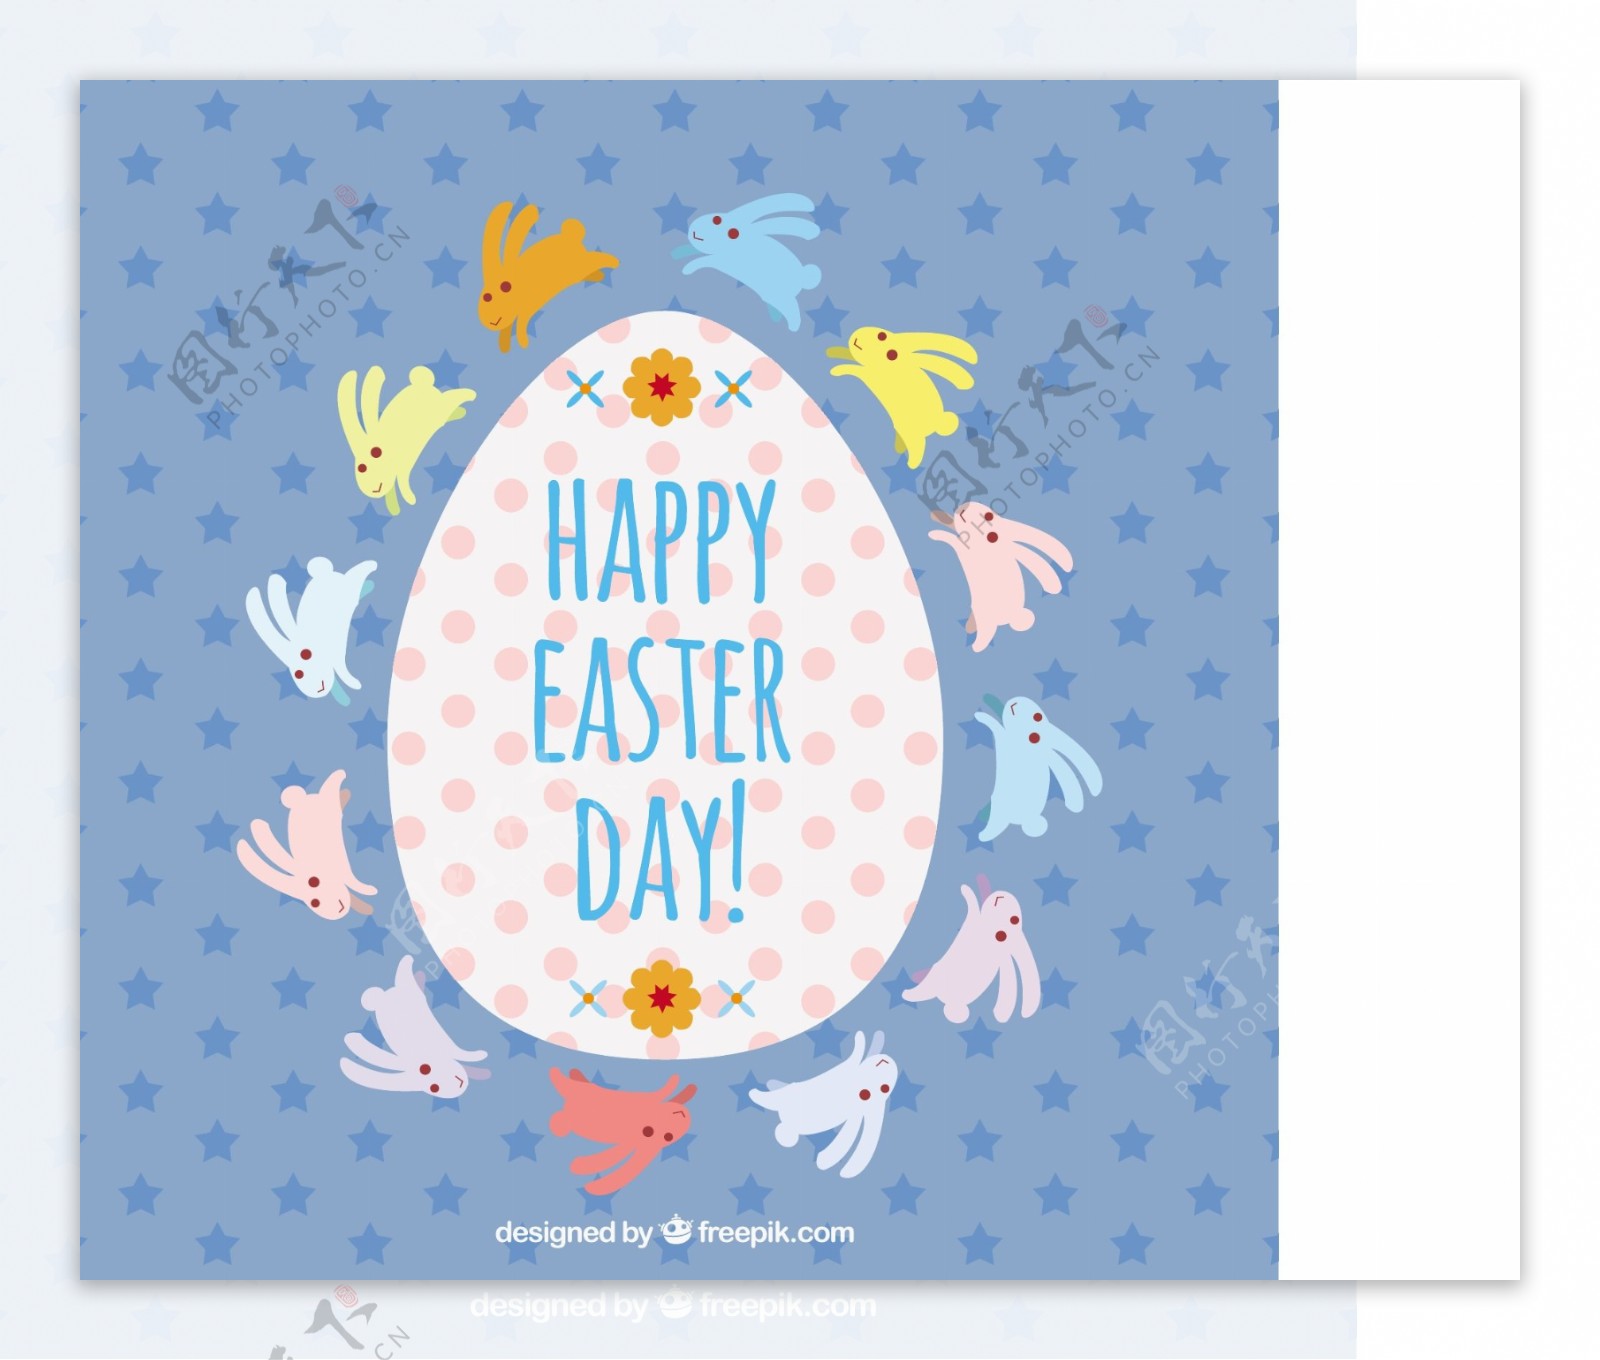 复活节背景兔子围绕着一个蛋